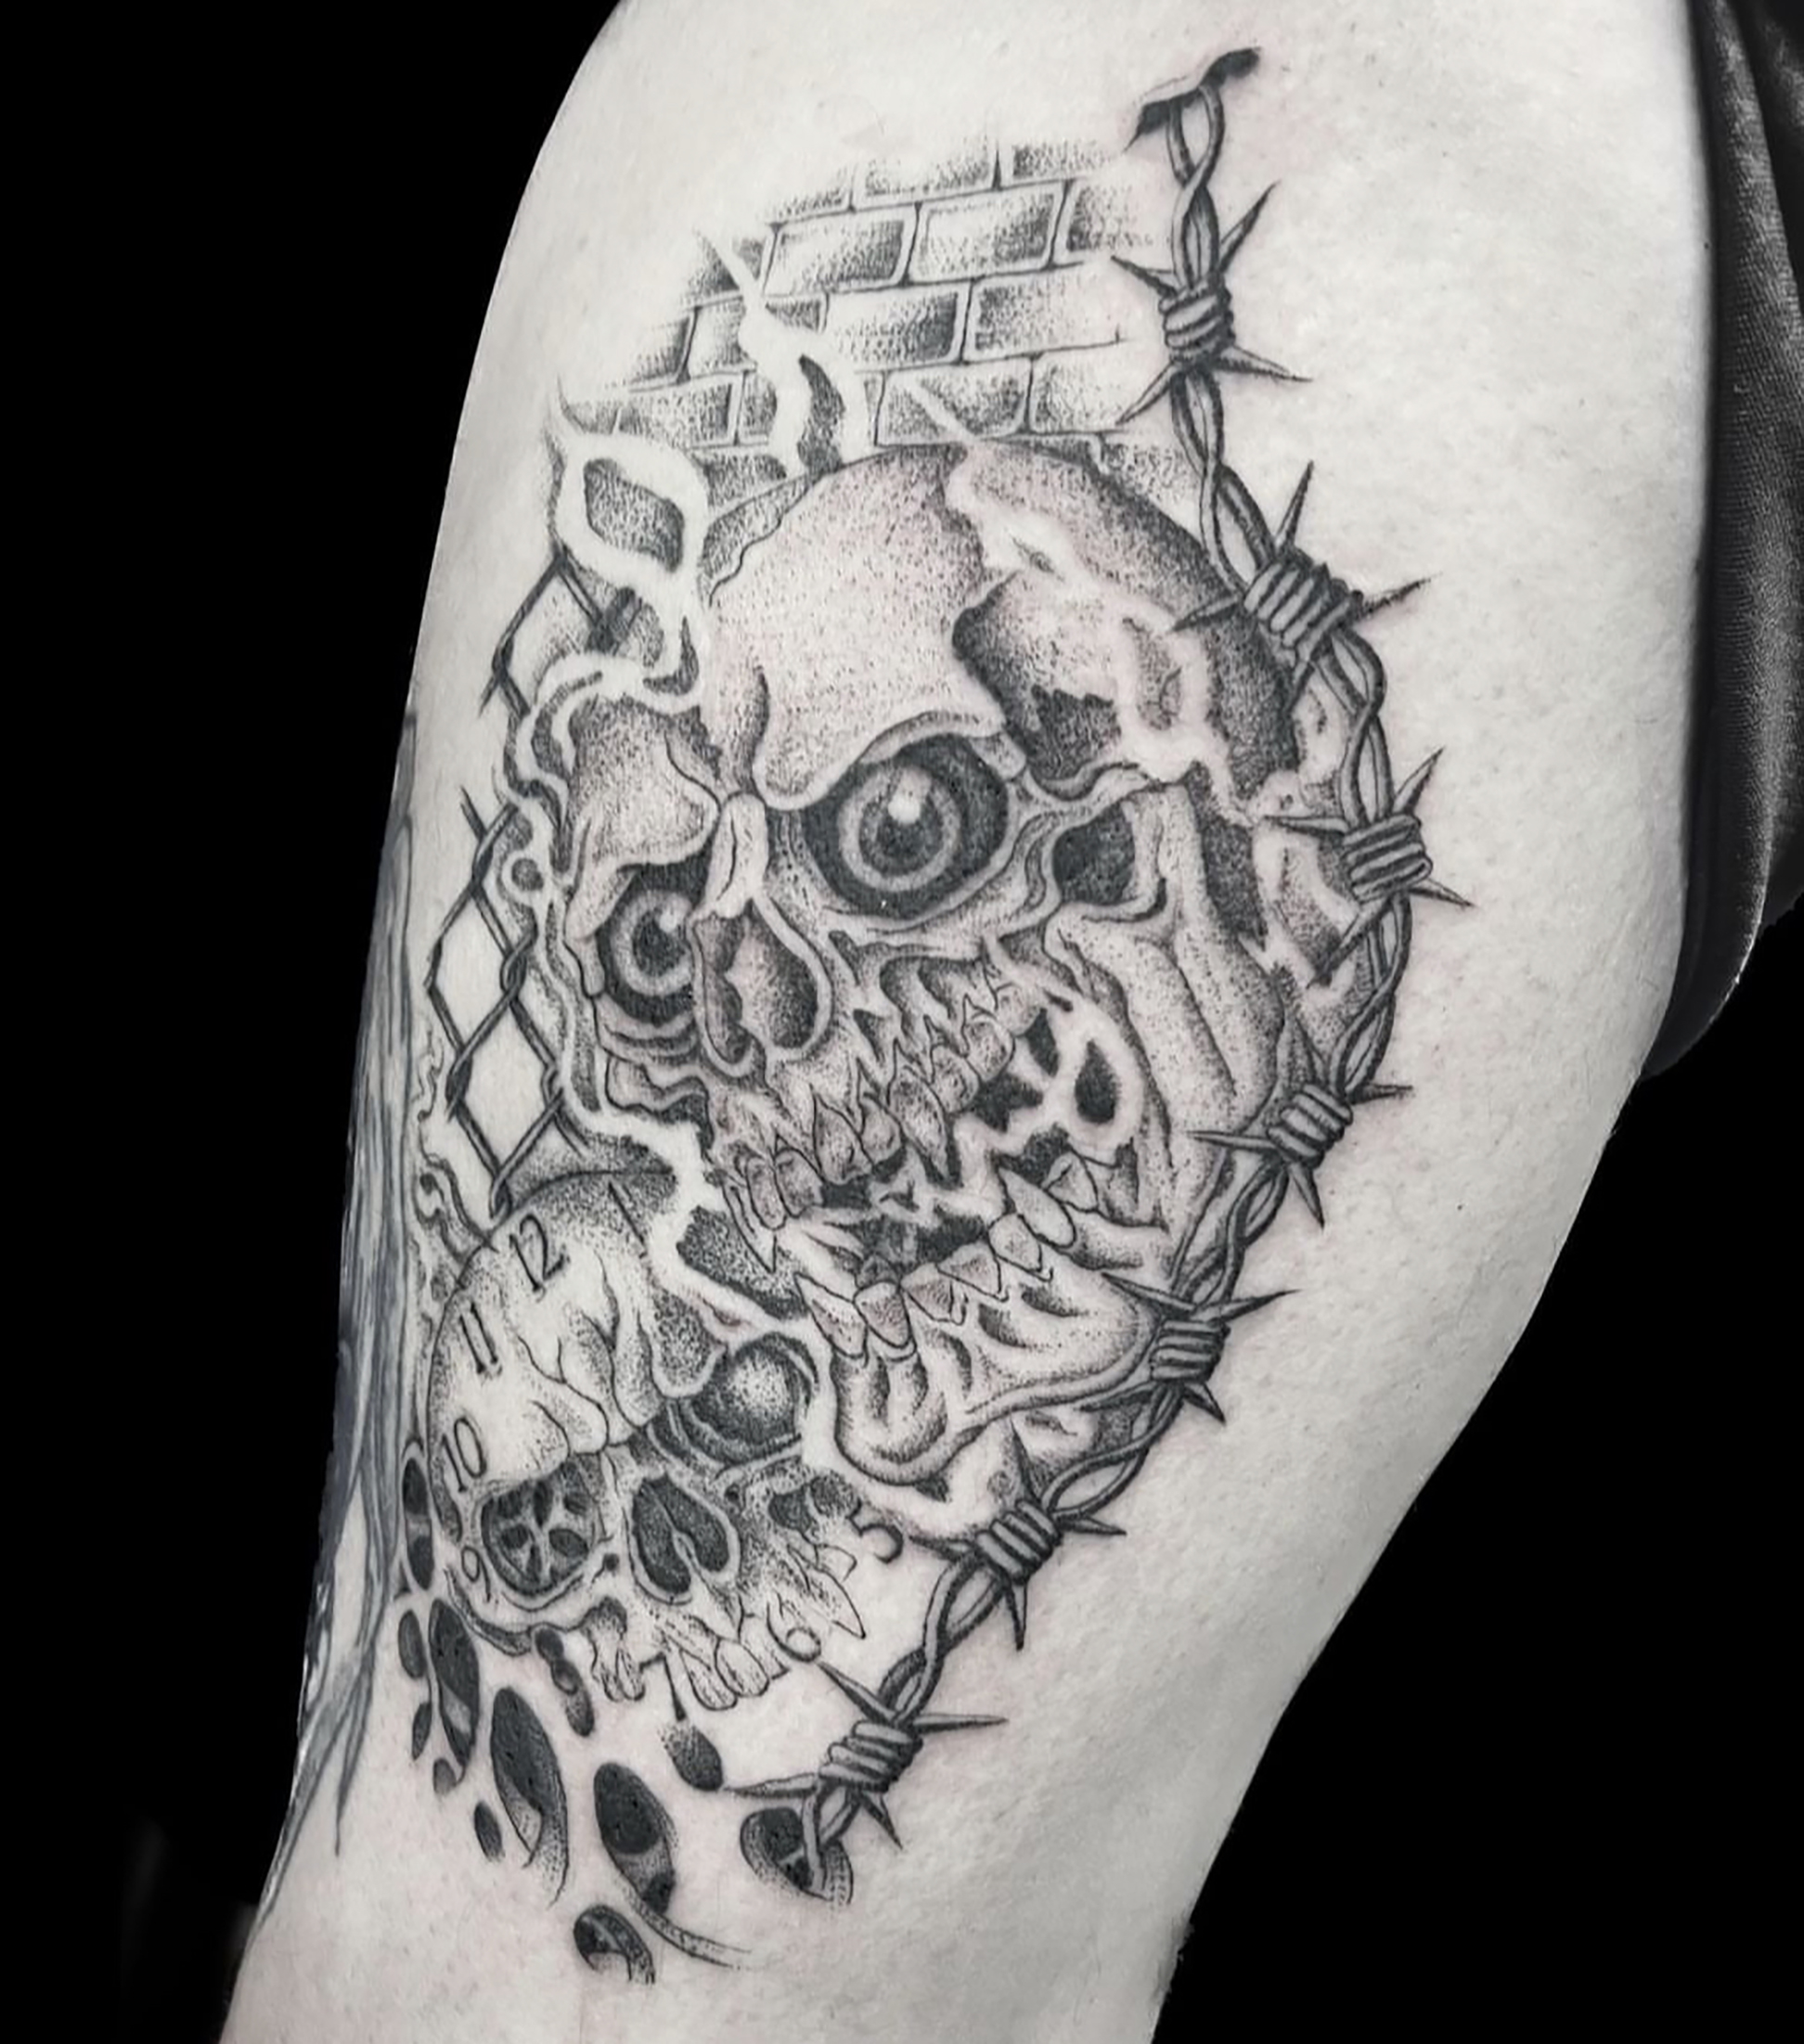 Tiger skull tattoo by Mariestel on DeviantArt